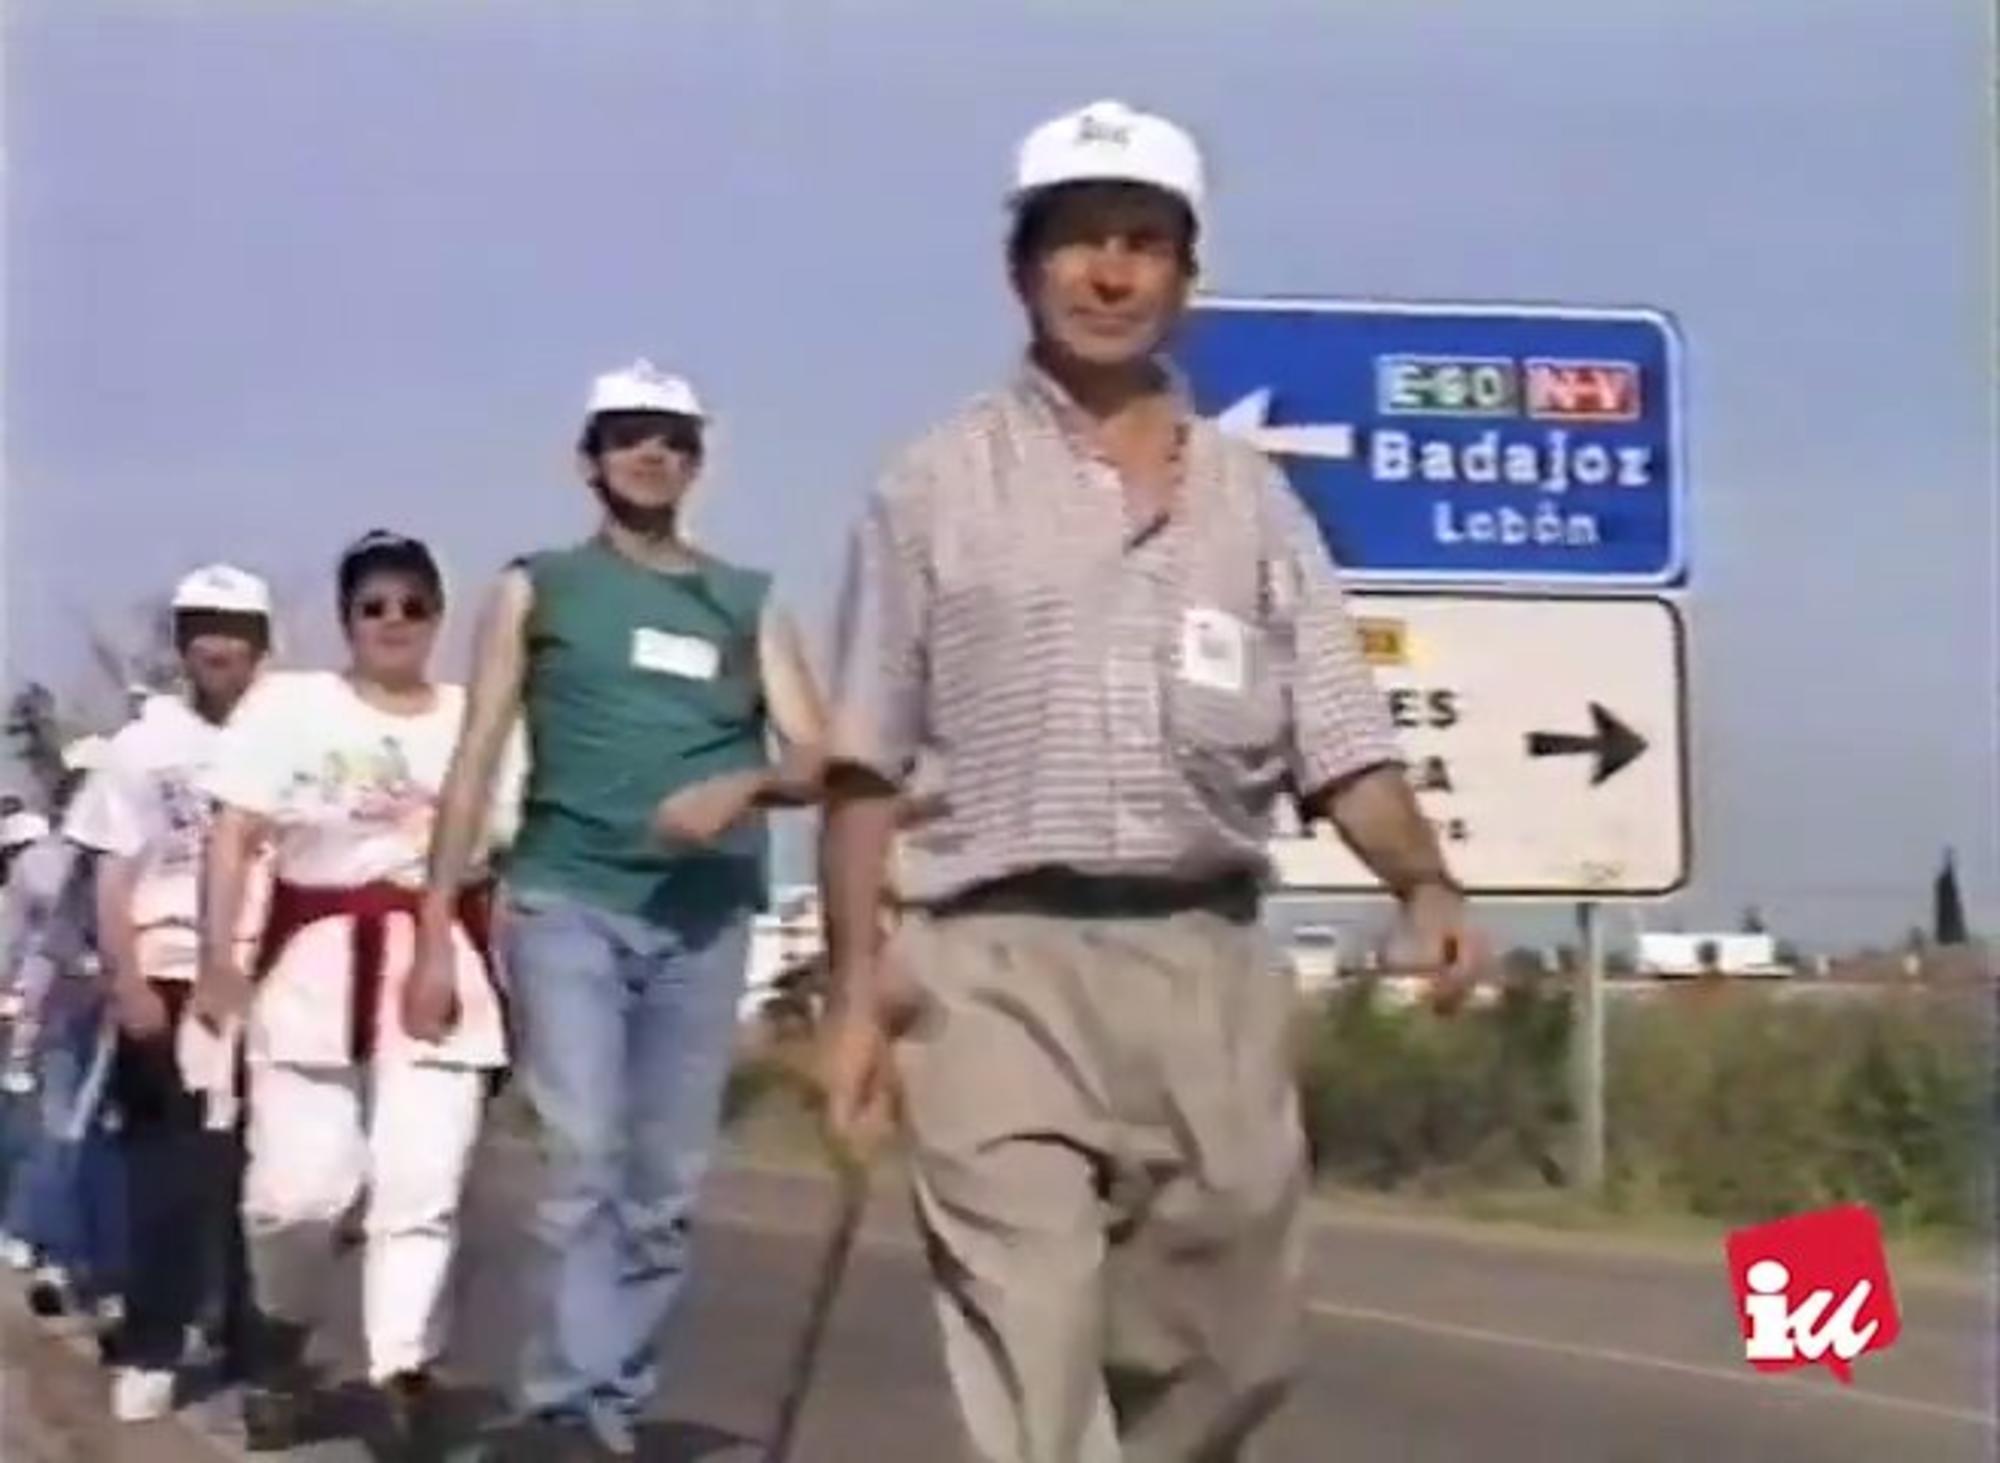 Marcha contra el paro en Extremadura 1997. Gregorio Herreros a la cabeza